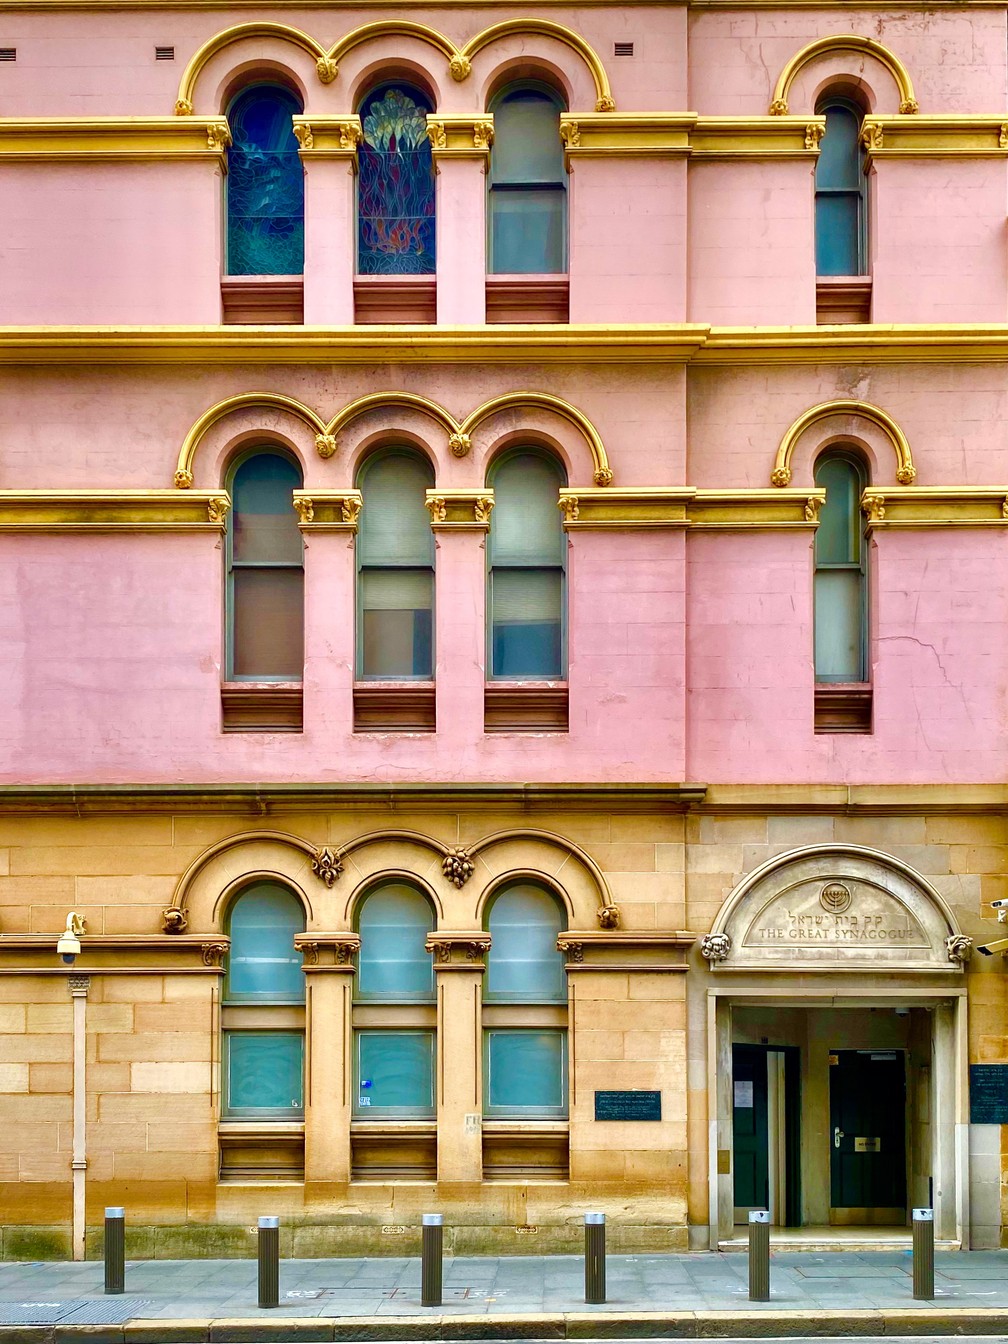 'A Grande Sinagoga', de Edwin Cabingan, ficou com o 1º lugar na categoria 'Arquitetura'. Foto tirada em Sydney — Foto: Edwin Cabingan/iPhone Photography Awards